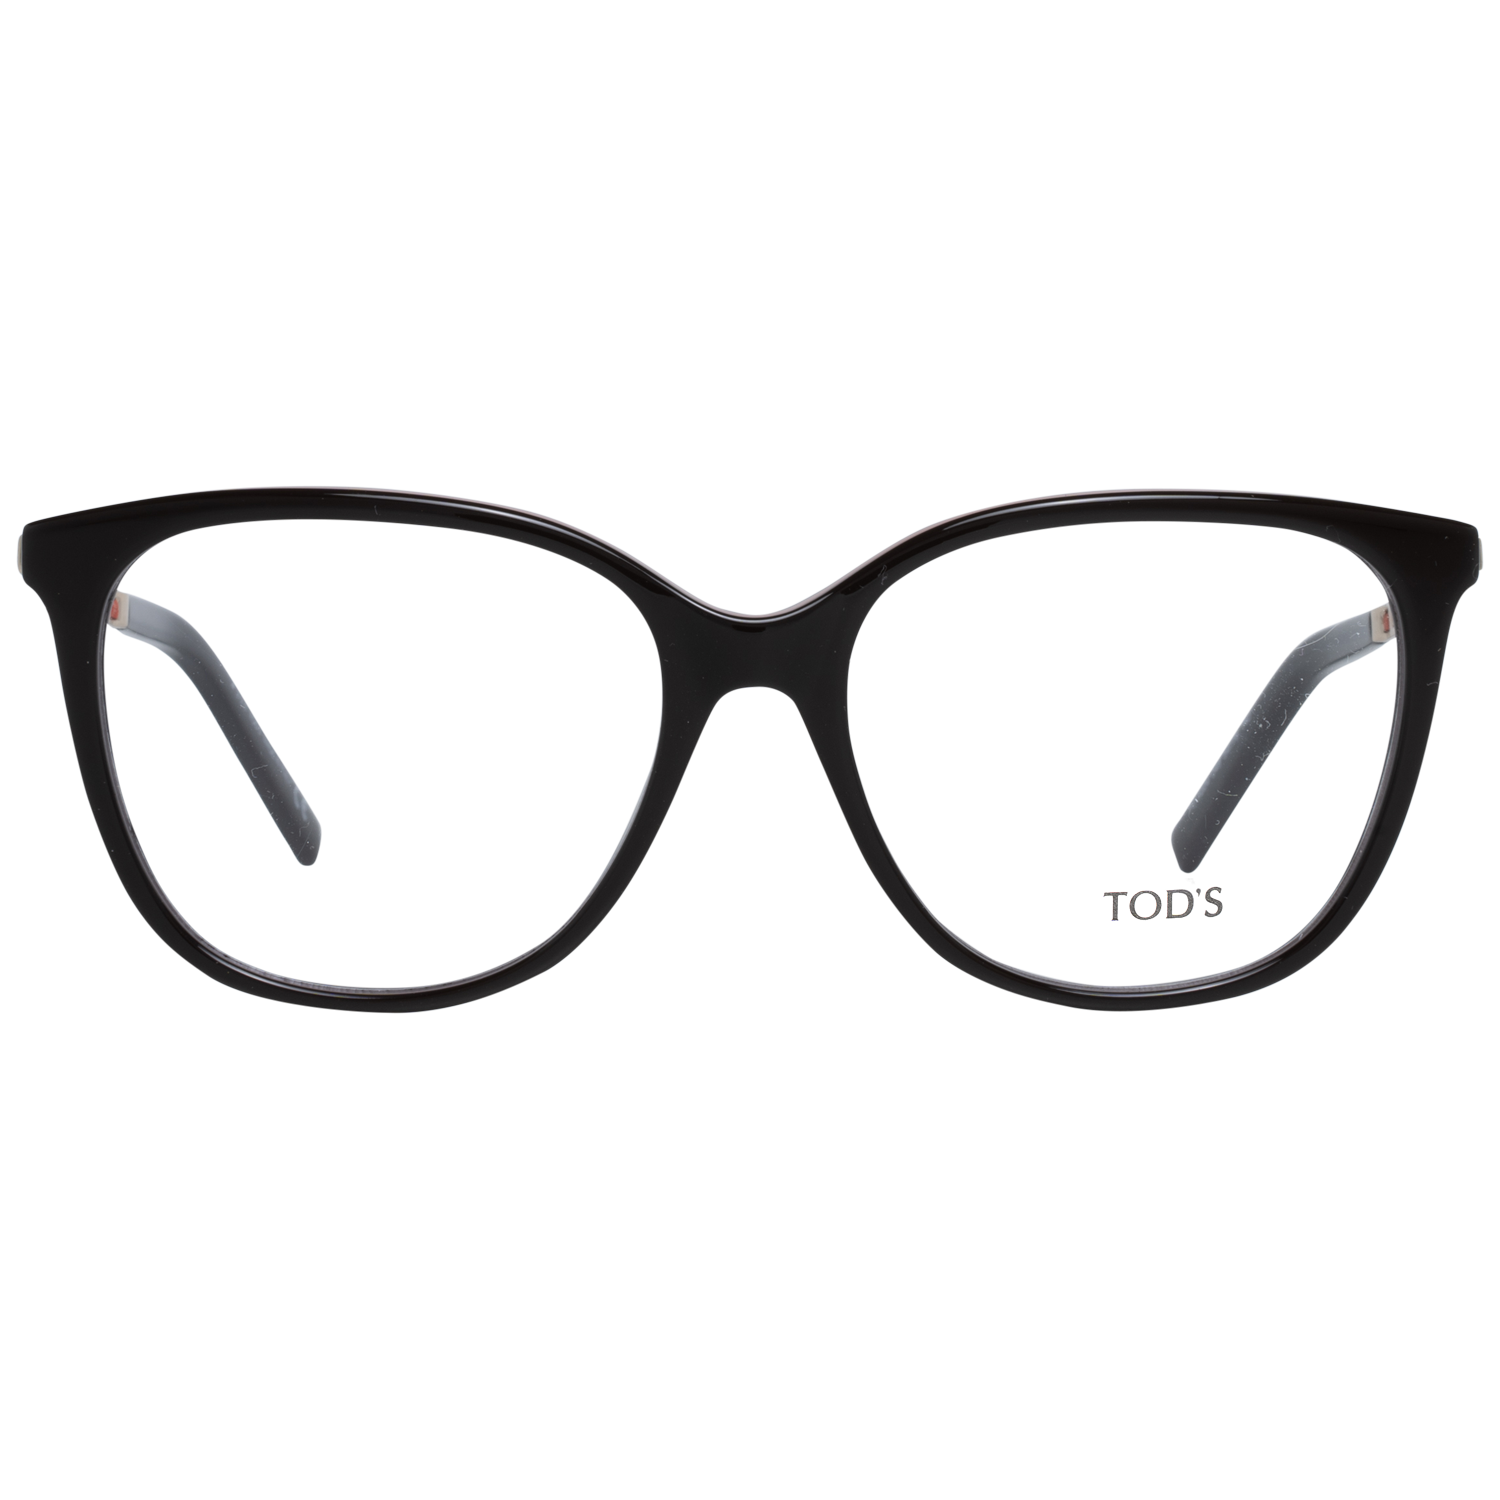 Tods Frames Tods Glasses Women's Brown Cat-Eye Frames TO5224 048 54mm Eyeglasses Eyewear UK USA Australia 